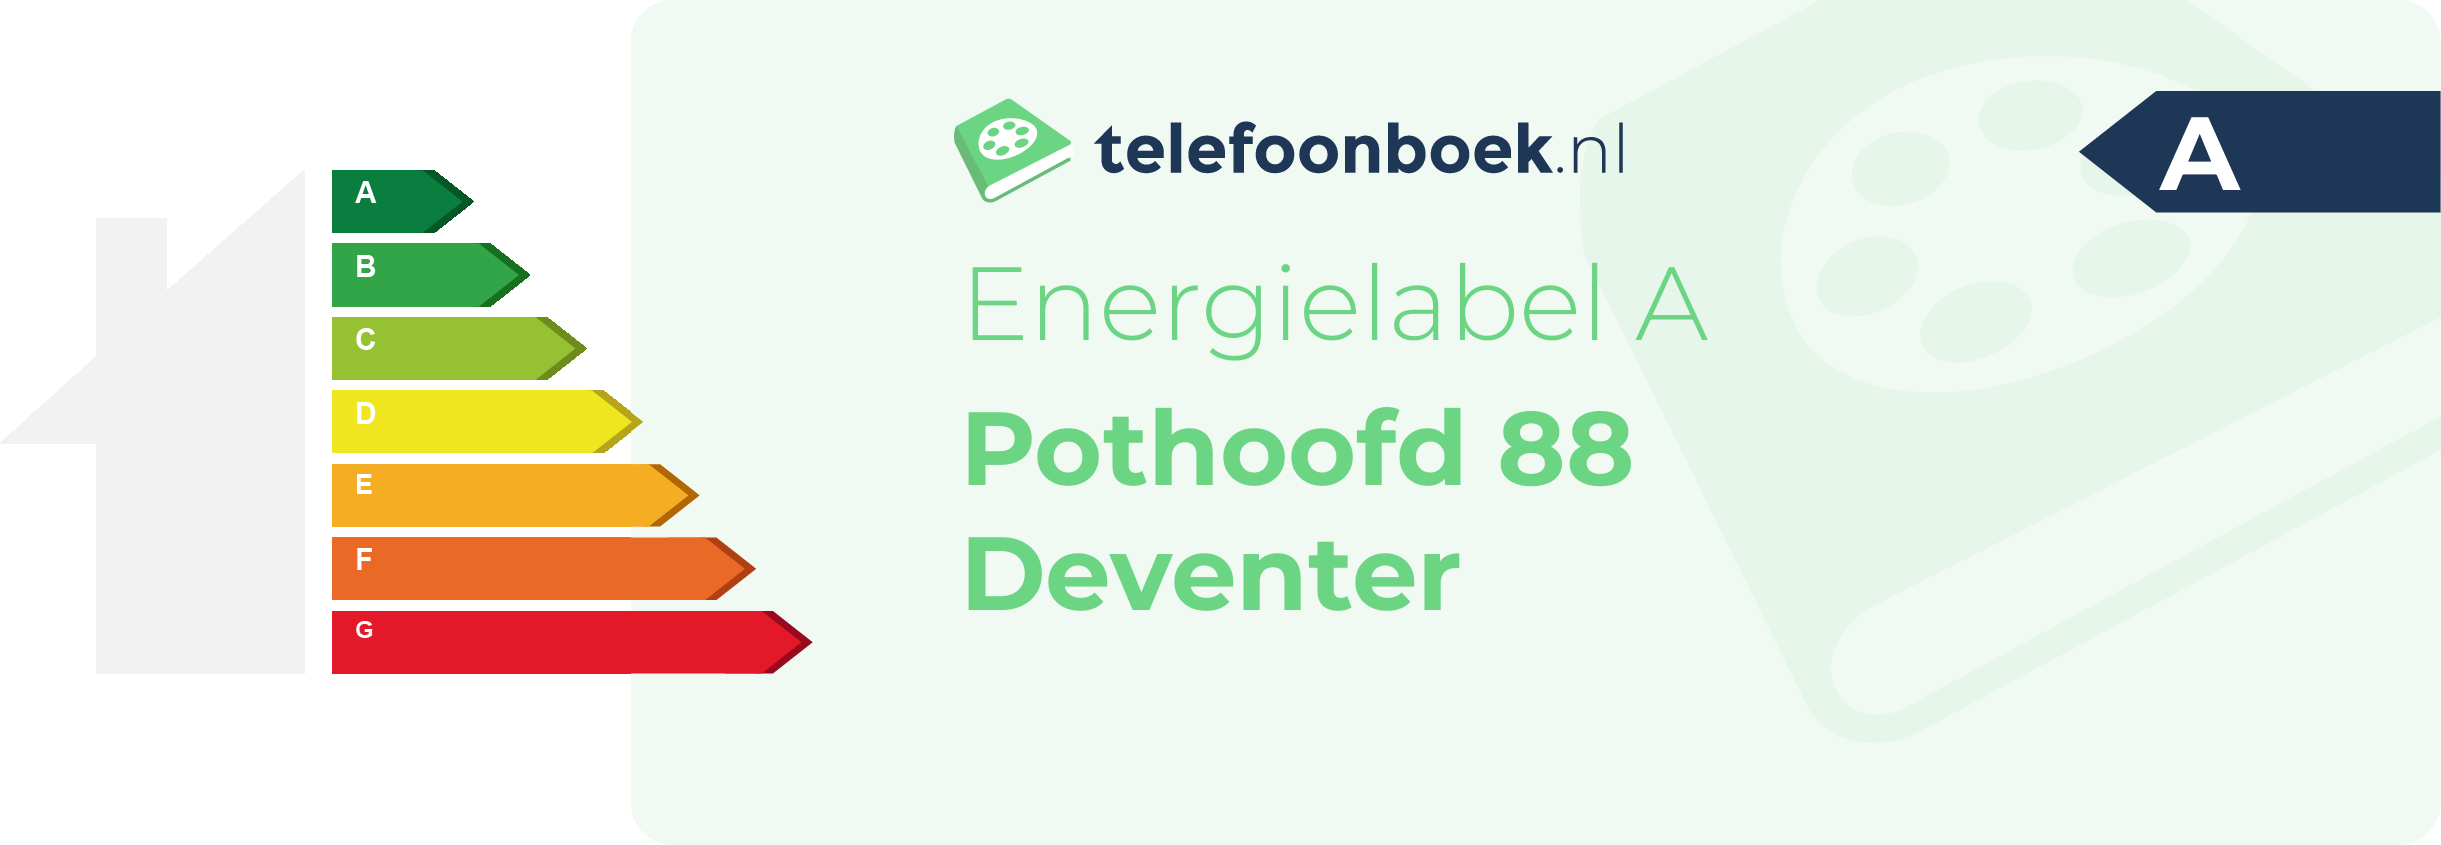 Energielabel Pothoofd 88 Deventer